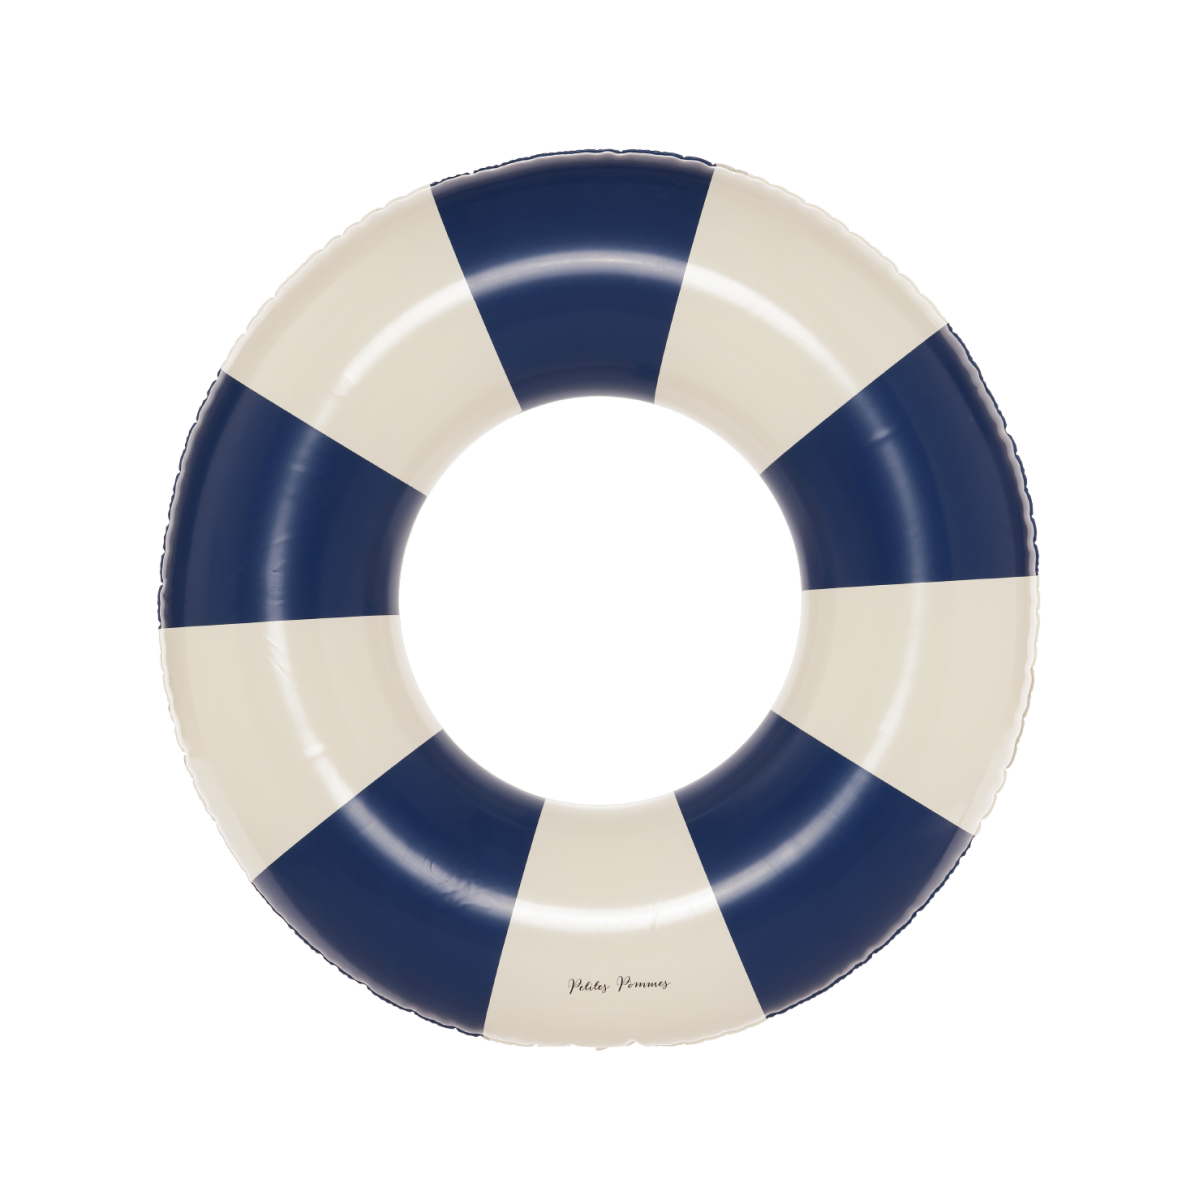 De Petites Pommes Olivia zwemband in de kleur cannes blue is een opblaasbare zwemband met een diameter van 45cm. Met deze zwemring kan jouw kindje heerlijk relaxen en zwemmen in het zwembad of de zee. VanZus.